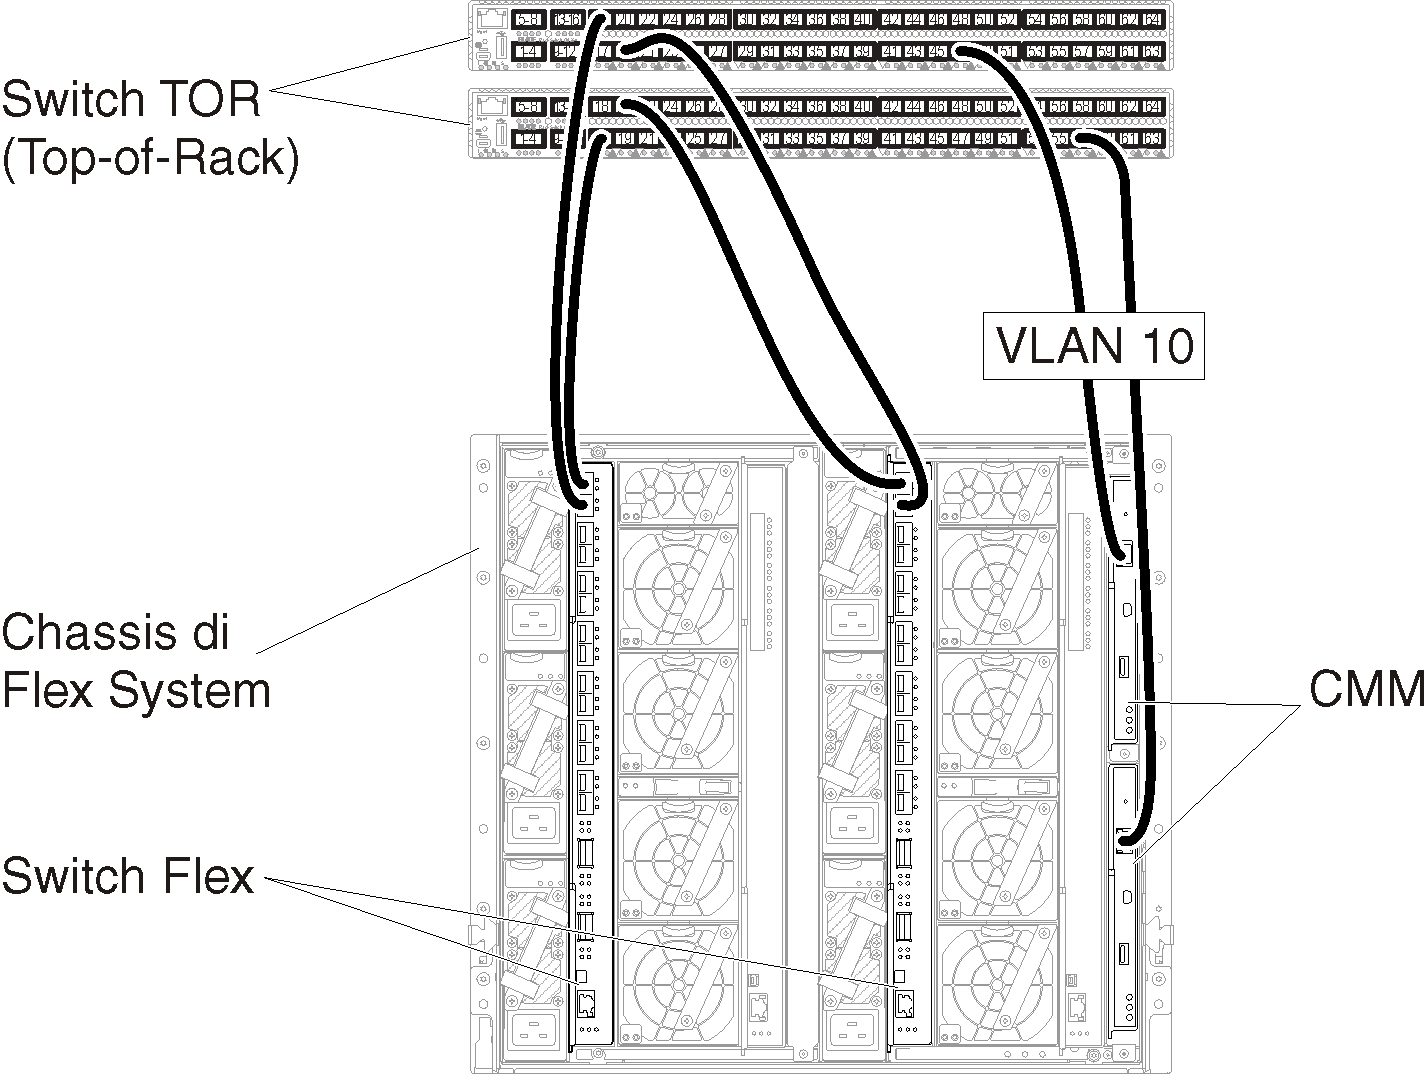 Mostra la configurazione dell'etichettatura VLAN solo nella rete di gestione